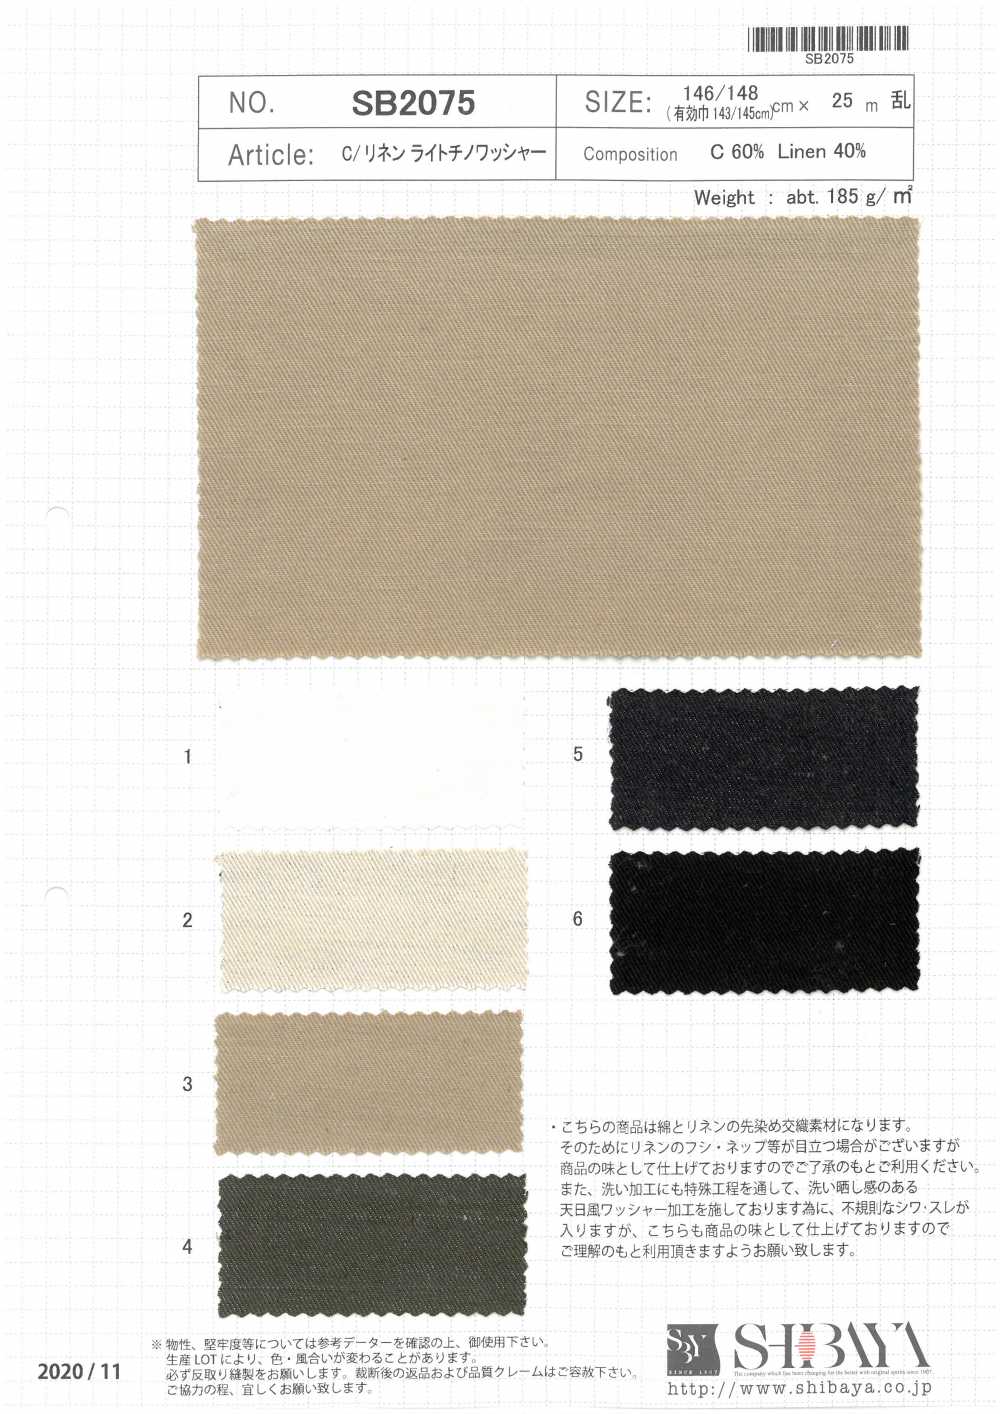 SB2075 Processamento De Lavadora C / Linen Light Chino[Têxtil / Tecido] SHIBAYA